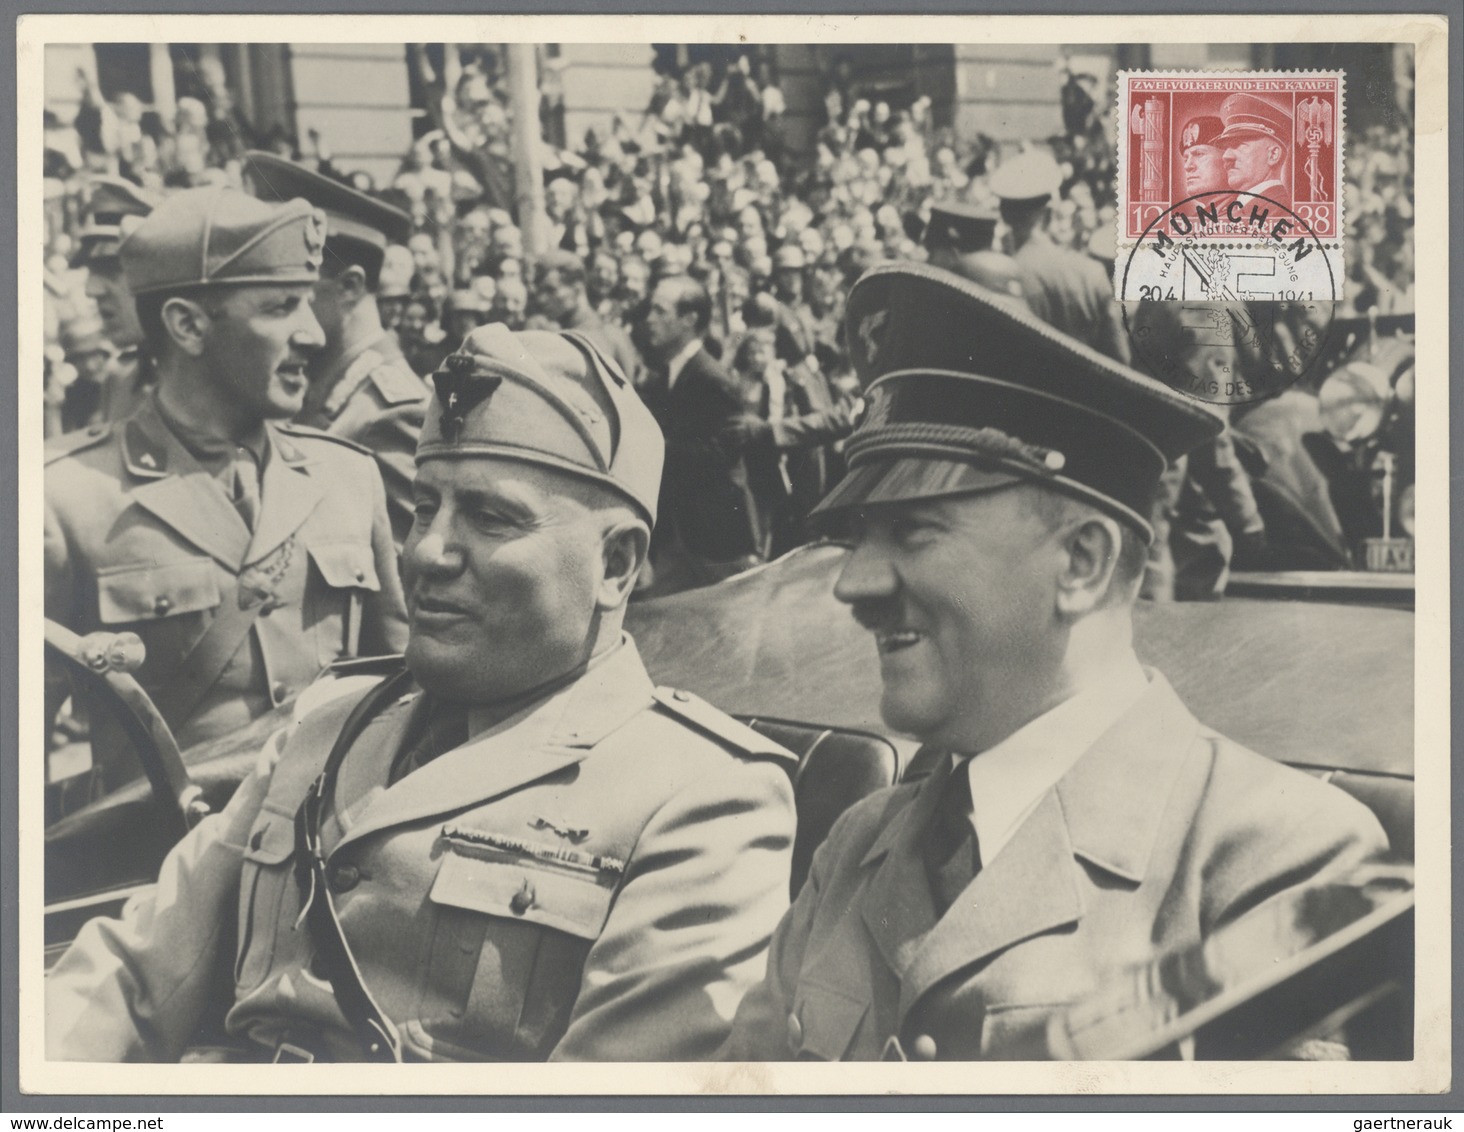 Ansichtskarten: Propaganda: 1941, "HITLER Und MUSSOLINI" Original Pressefoto Photo Hoffmann München - Political Parties & Elections